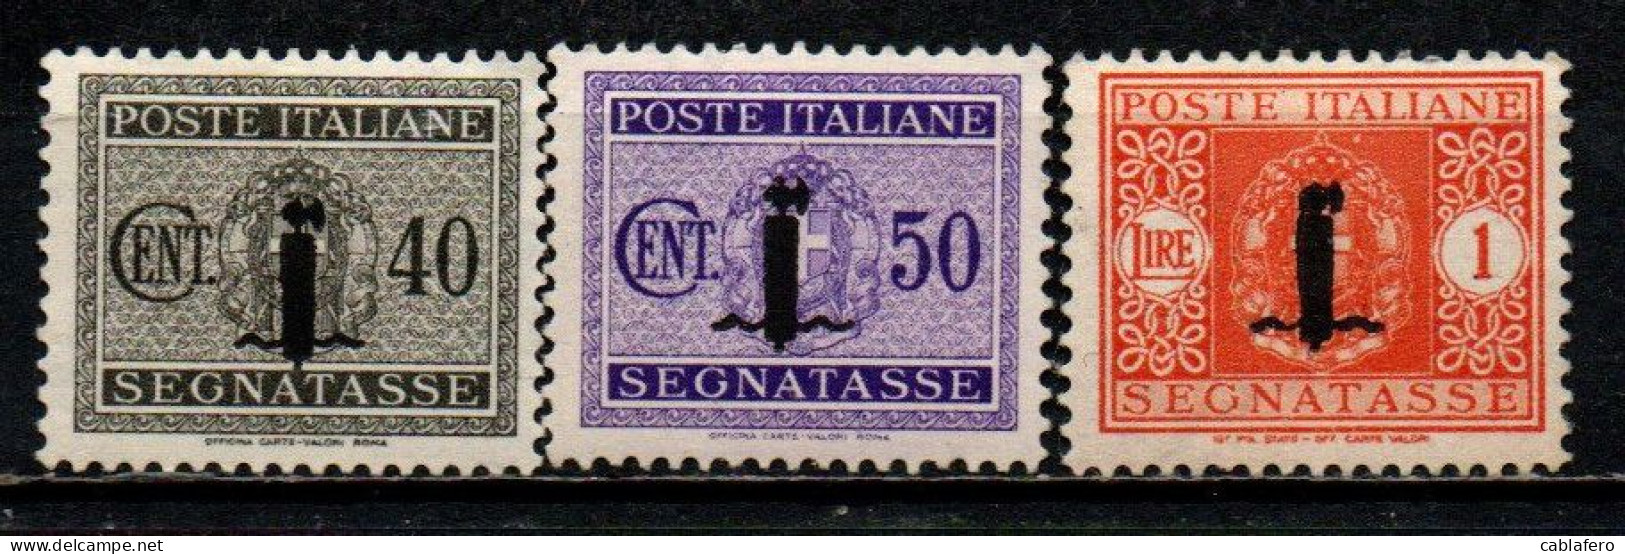 ITALIA RSI - 1944 - SEGNATASSE - VALORI DA 40-50 CENT. E 1 LIRA - MH - Segnatasse